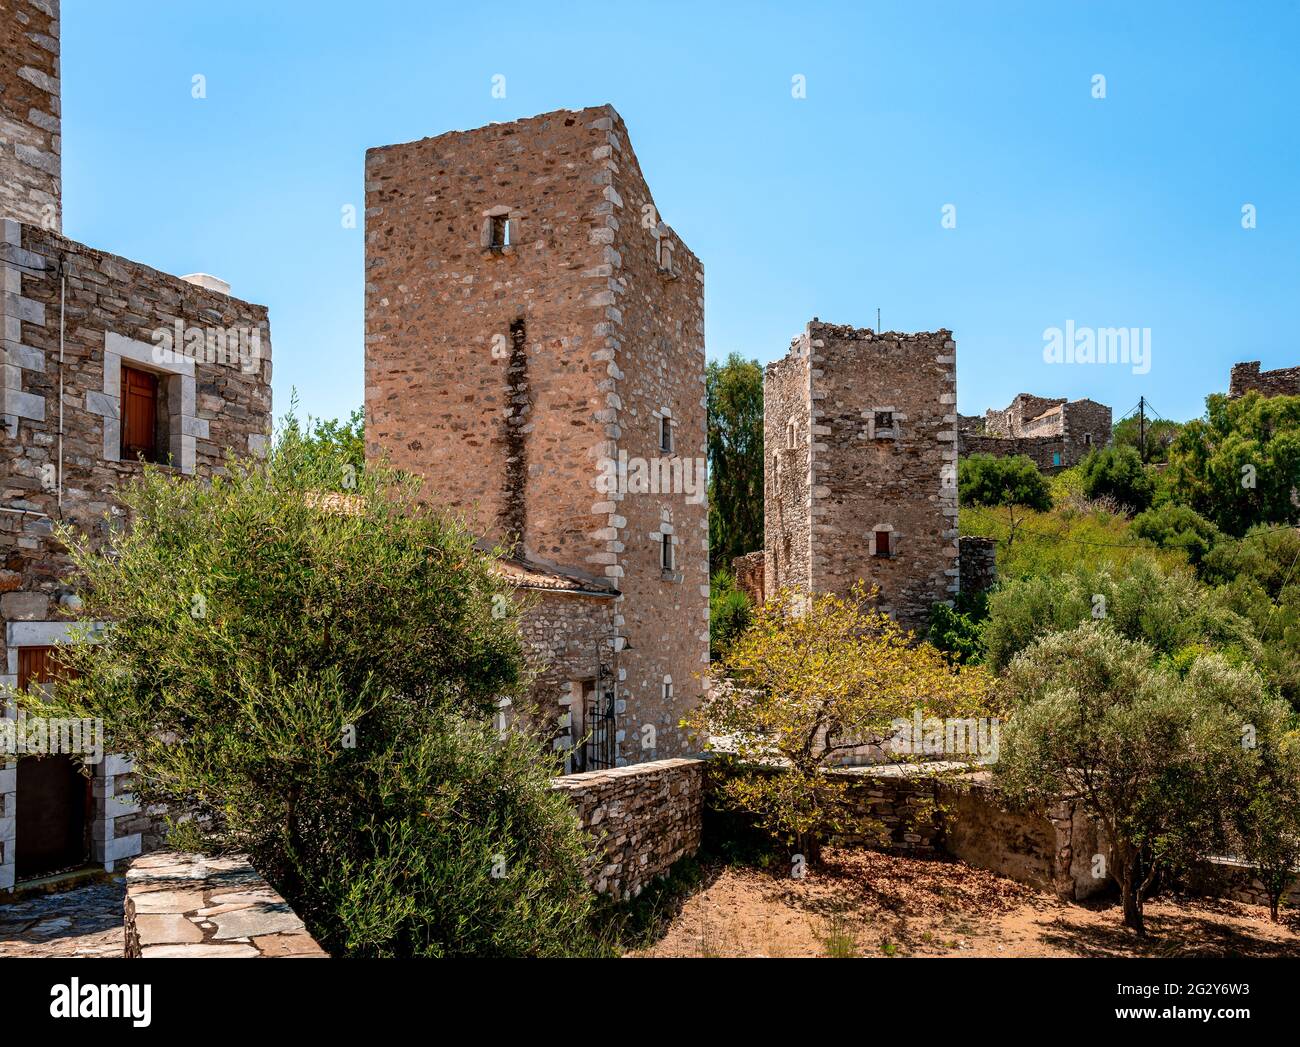 Vatheia è un villaggio abbandonato, a mani, in Grecia. Una delle principali destinazioni turistiche, è un esempio emblematico dell'architetto vernacolare della Maniota meridionale Foto Stock